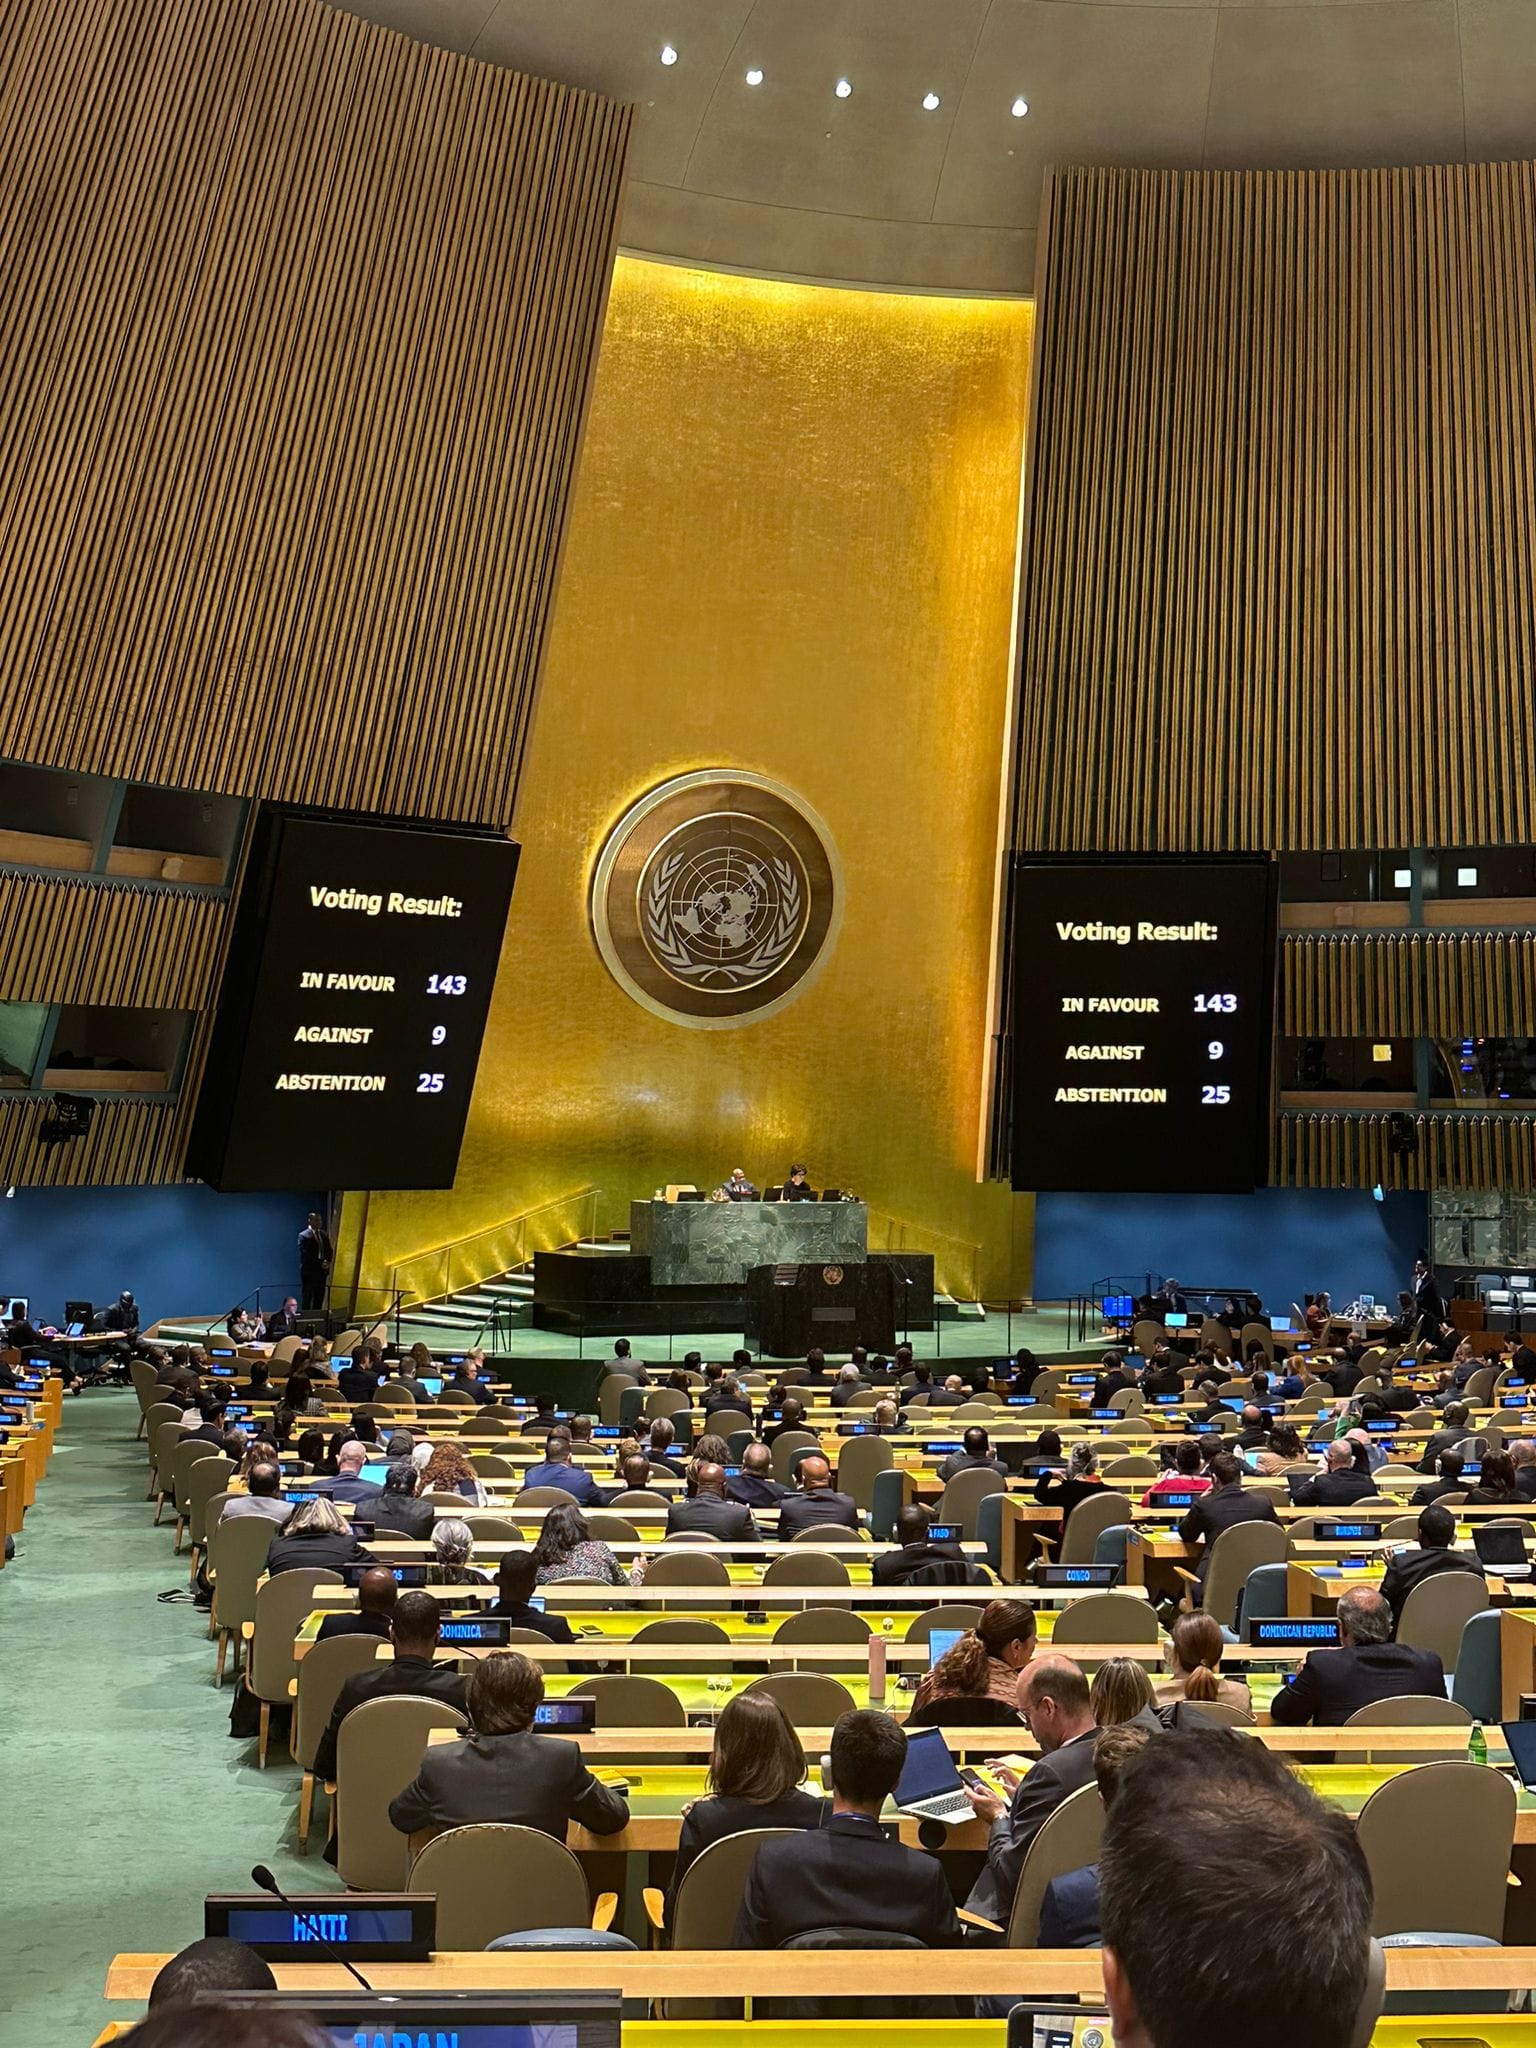  ليبيا تصوت لصالح قرار يدعم طلب عضوية فلسطين في الأمم المتحدة مع منحها امتيازات إضافية.